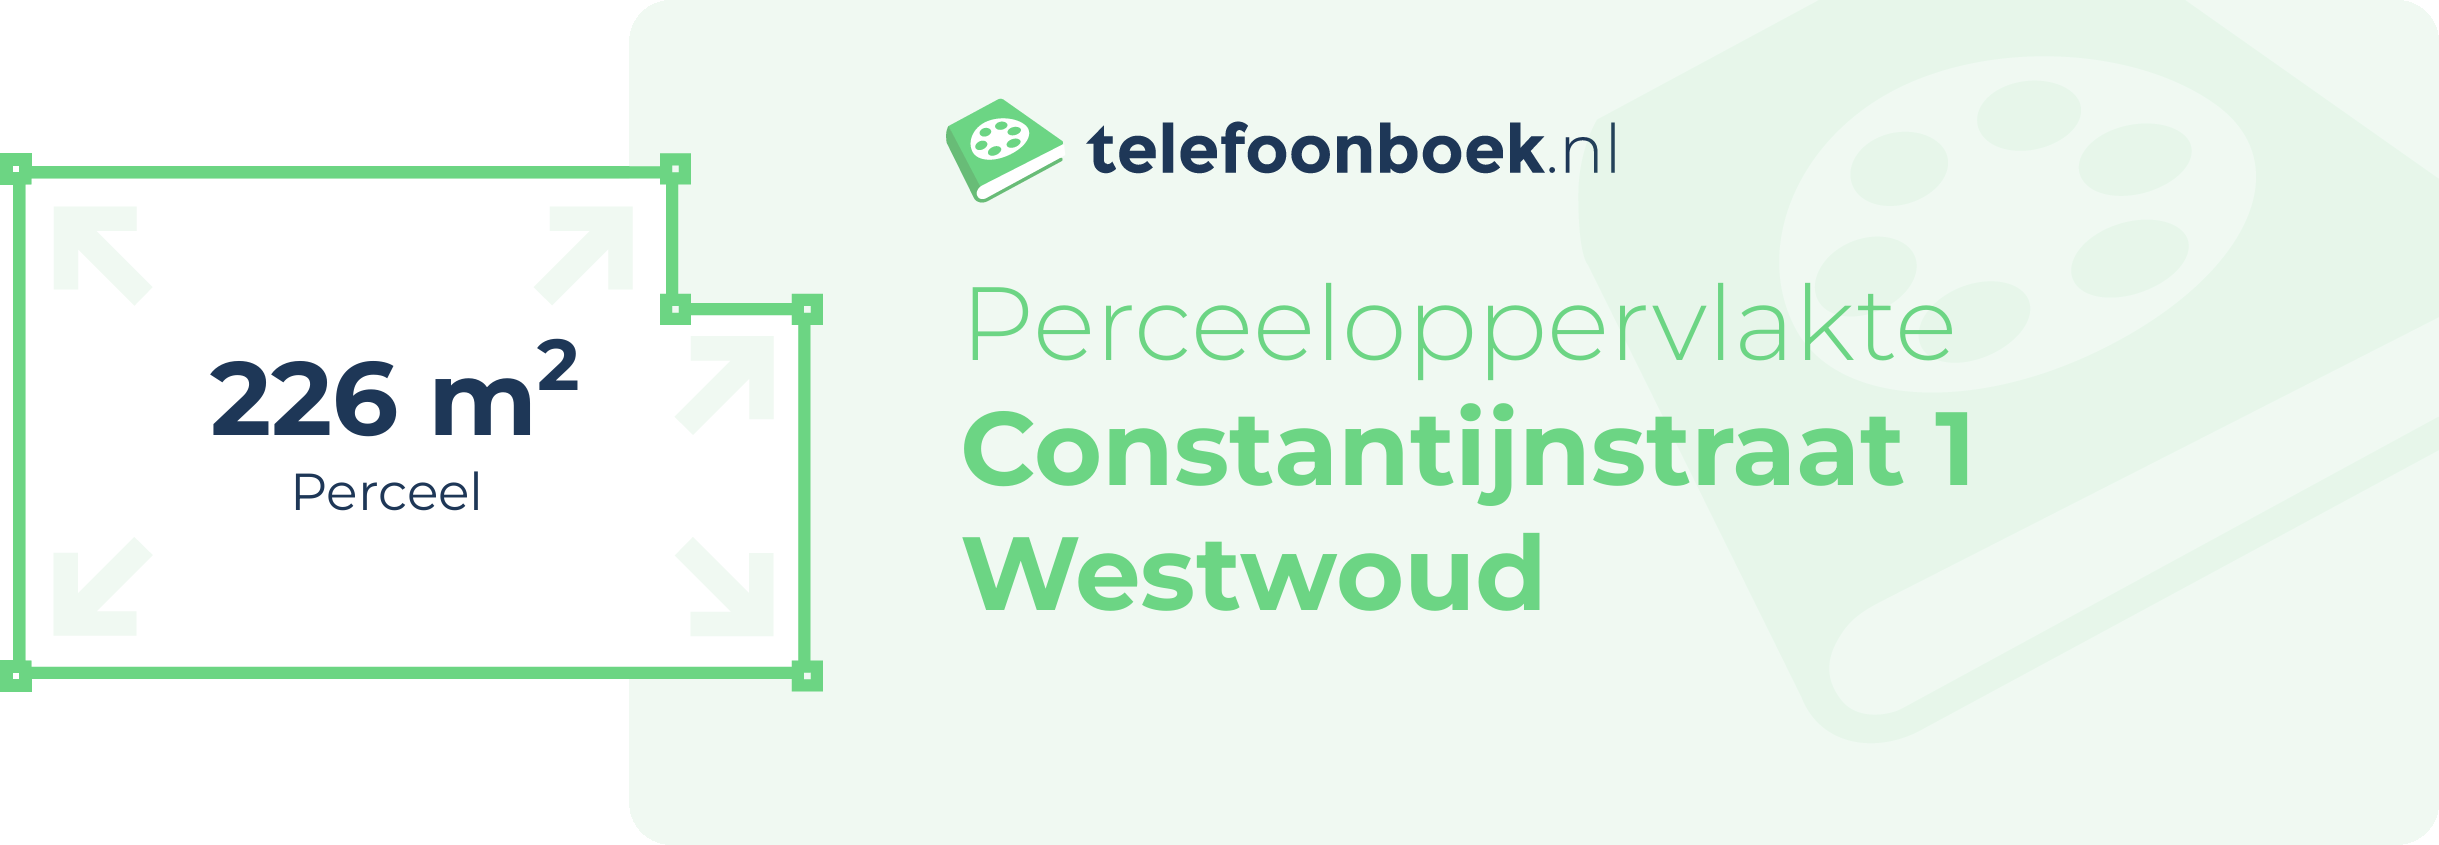 Perceeloppervlakte Constantijnstraat 1 Westwoud